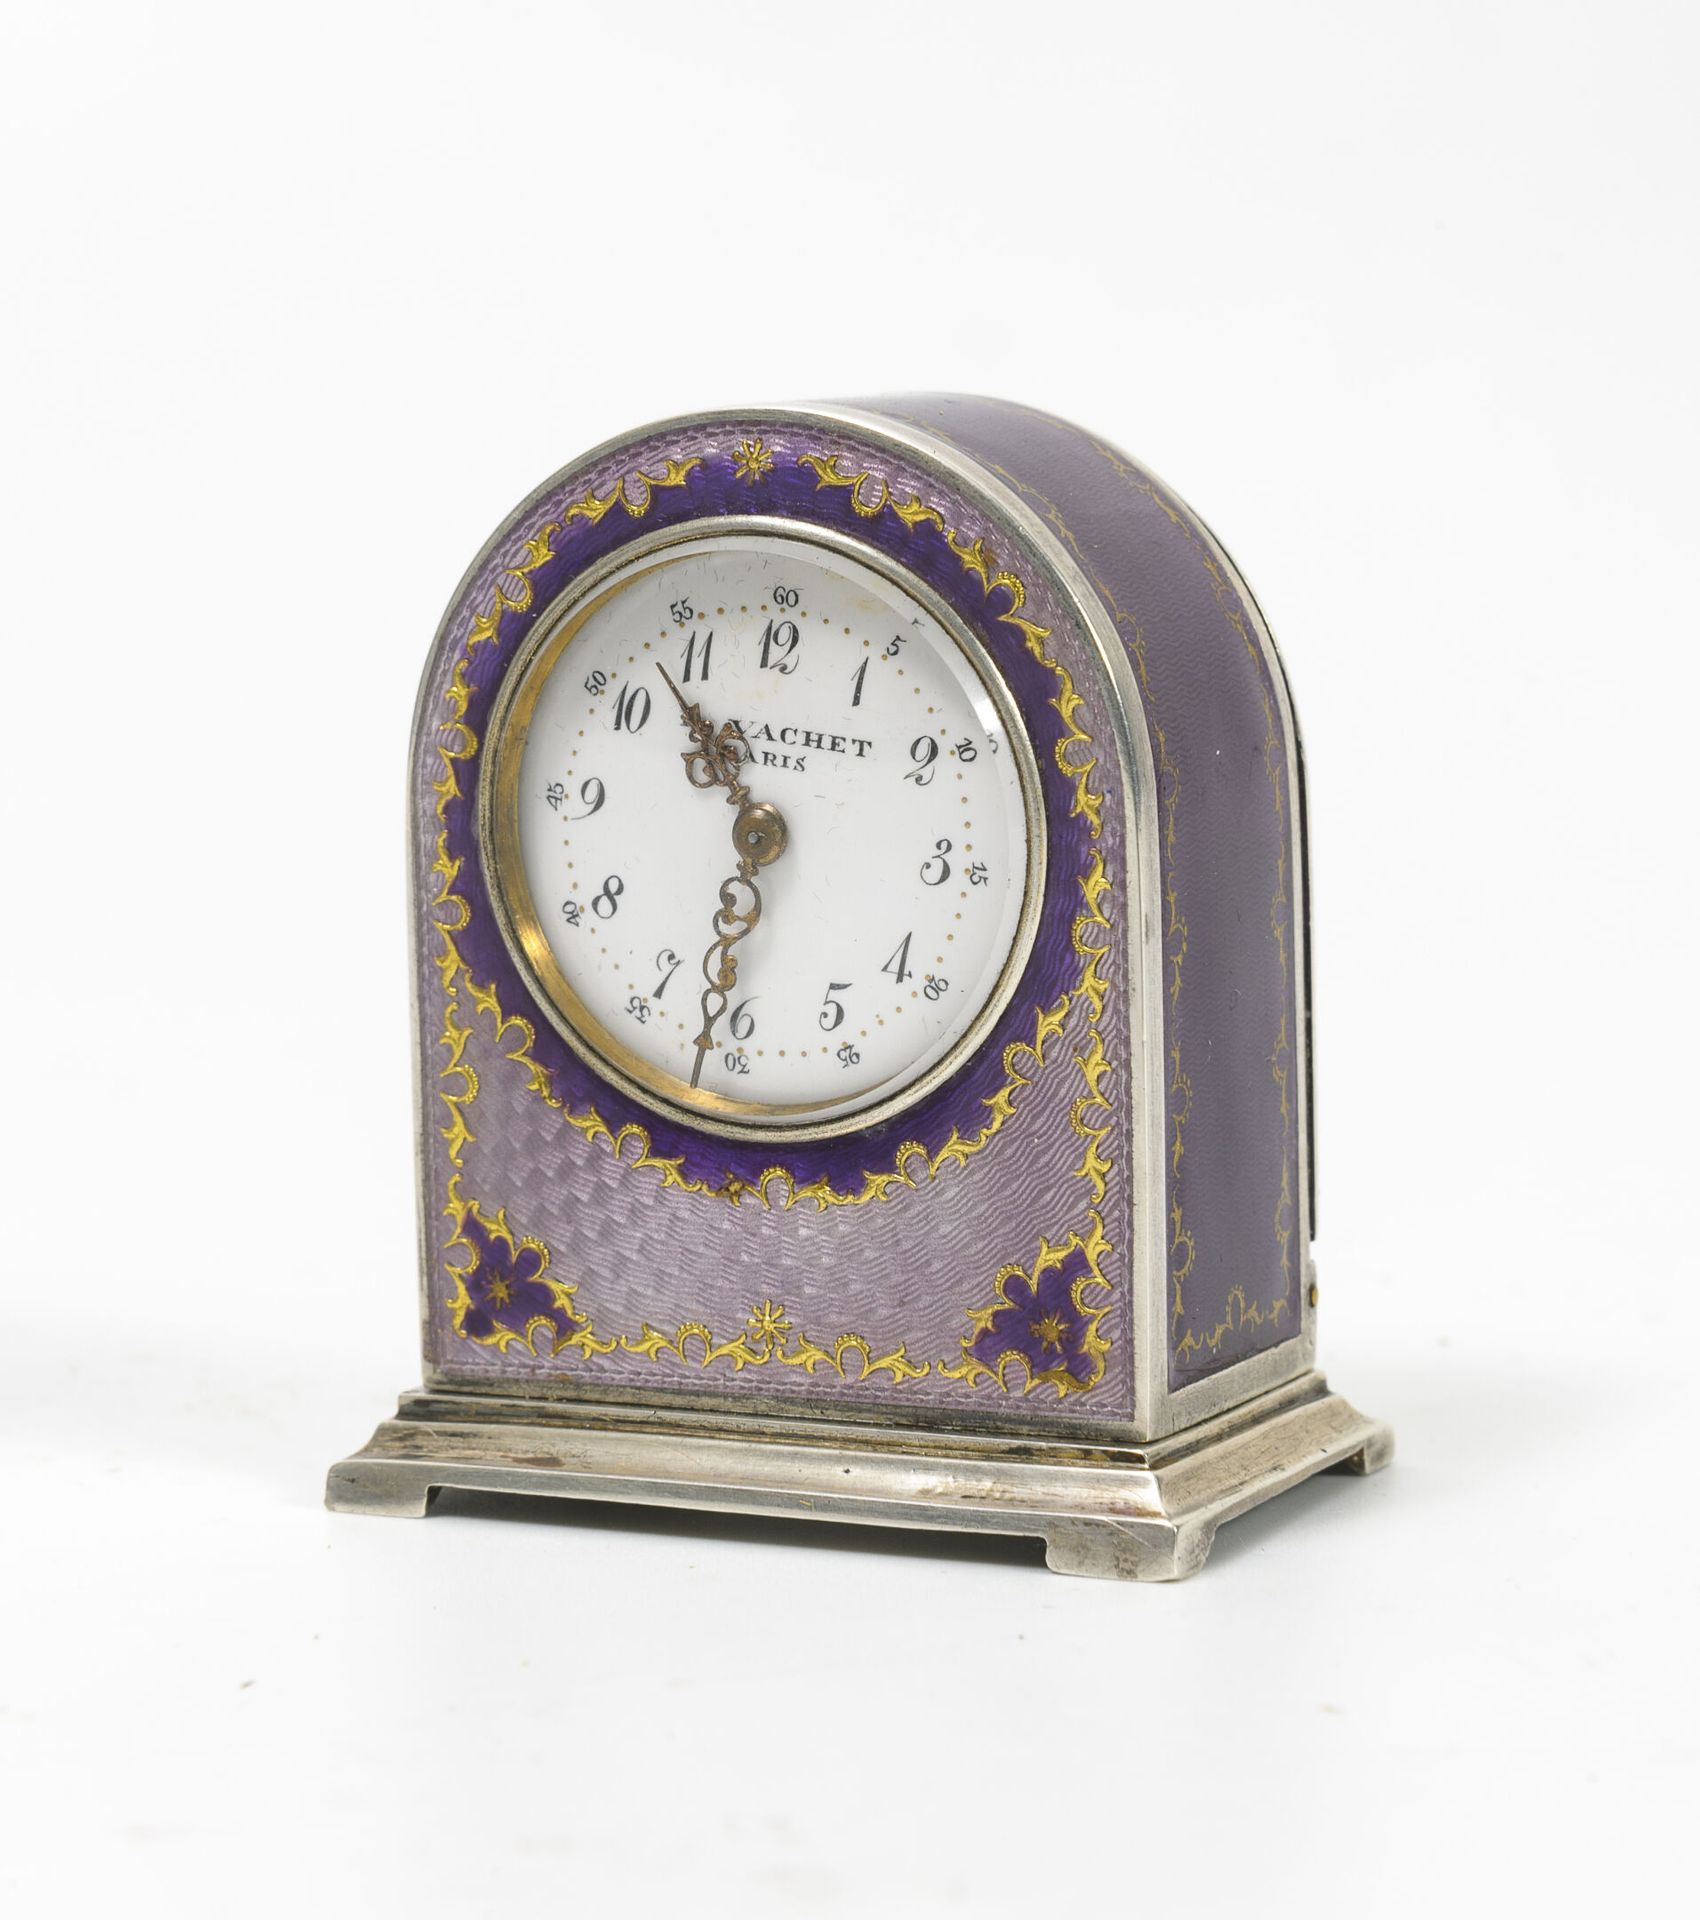 VACHET, Paris 
Tischuhr aus Silber (min. 800) und violetter und lila Emaille, gu&hellip;